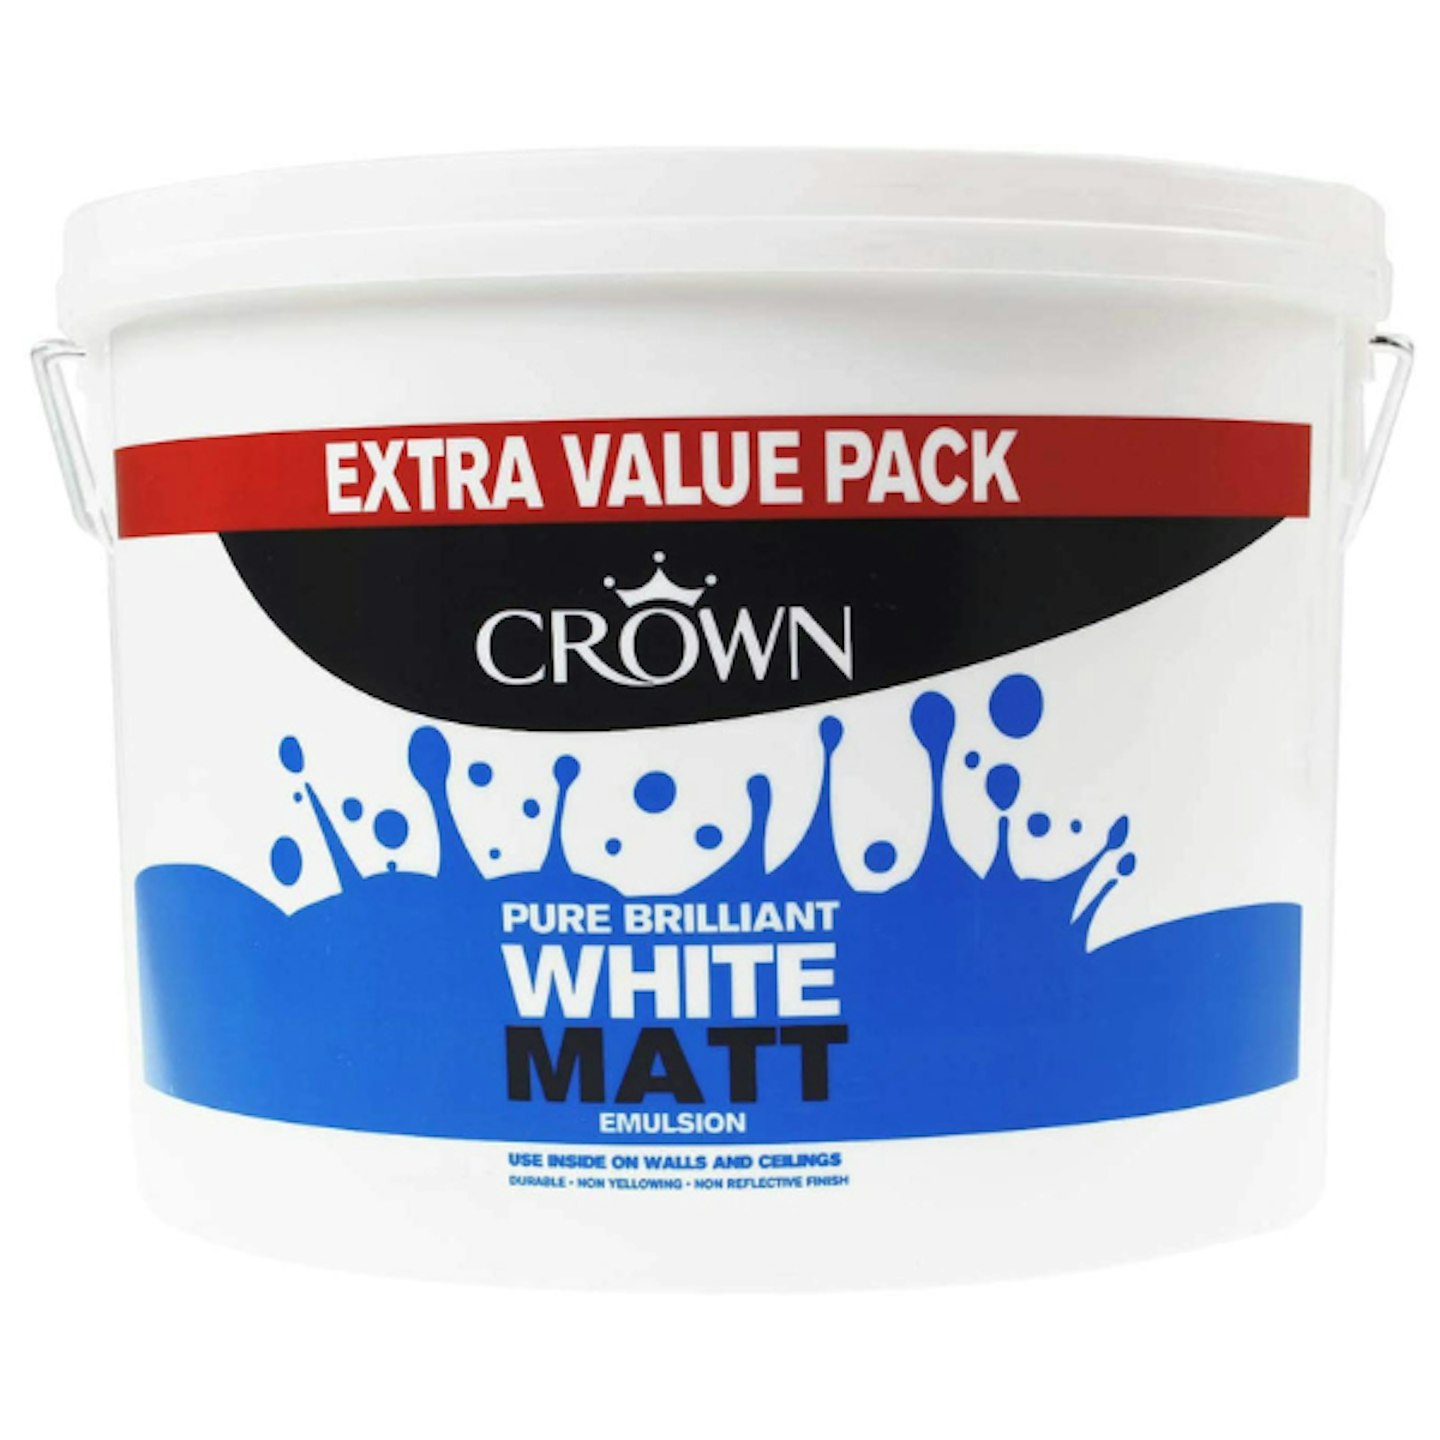 Crown White Matt emulsion paint